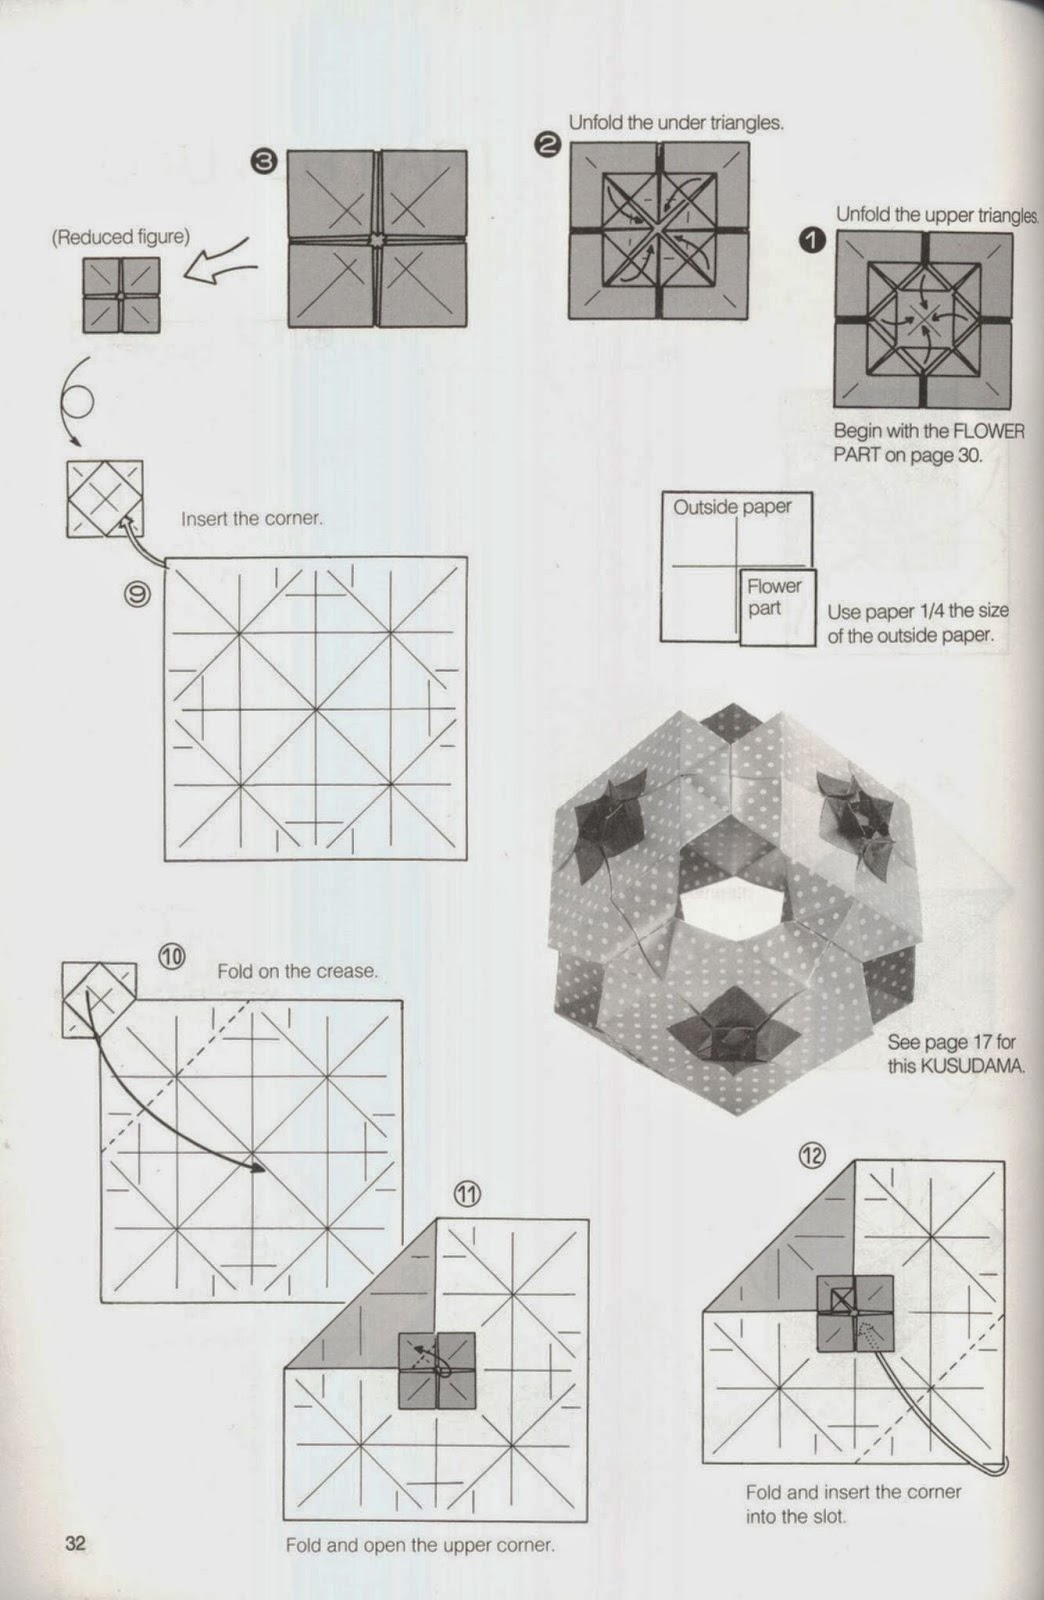 Bảng hướng dẫn cách gấp xếp UFO trong ebook Kusudama ball origami